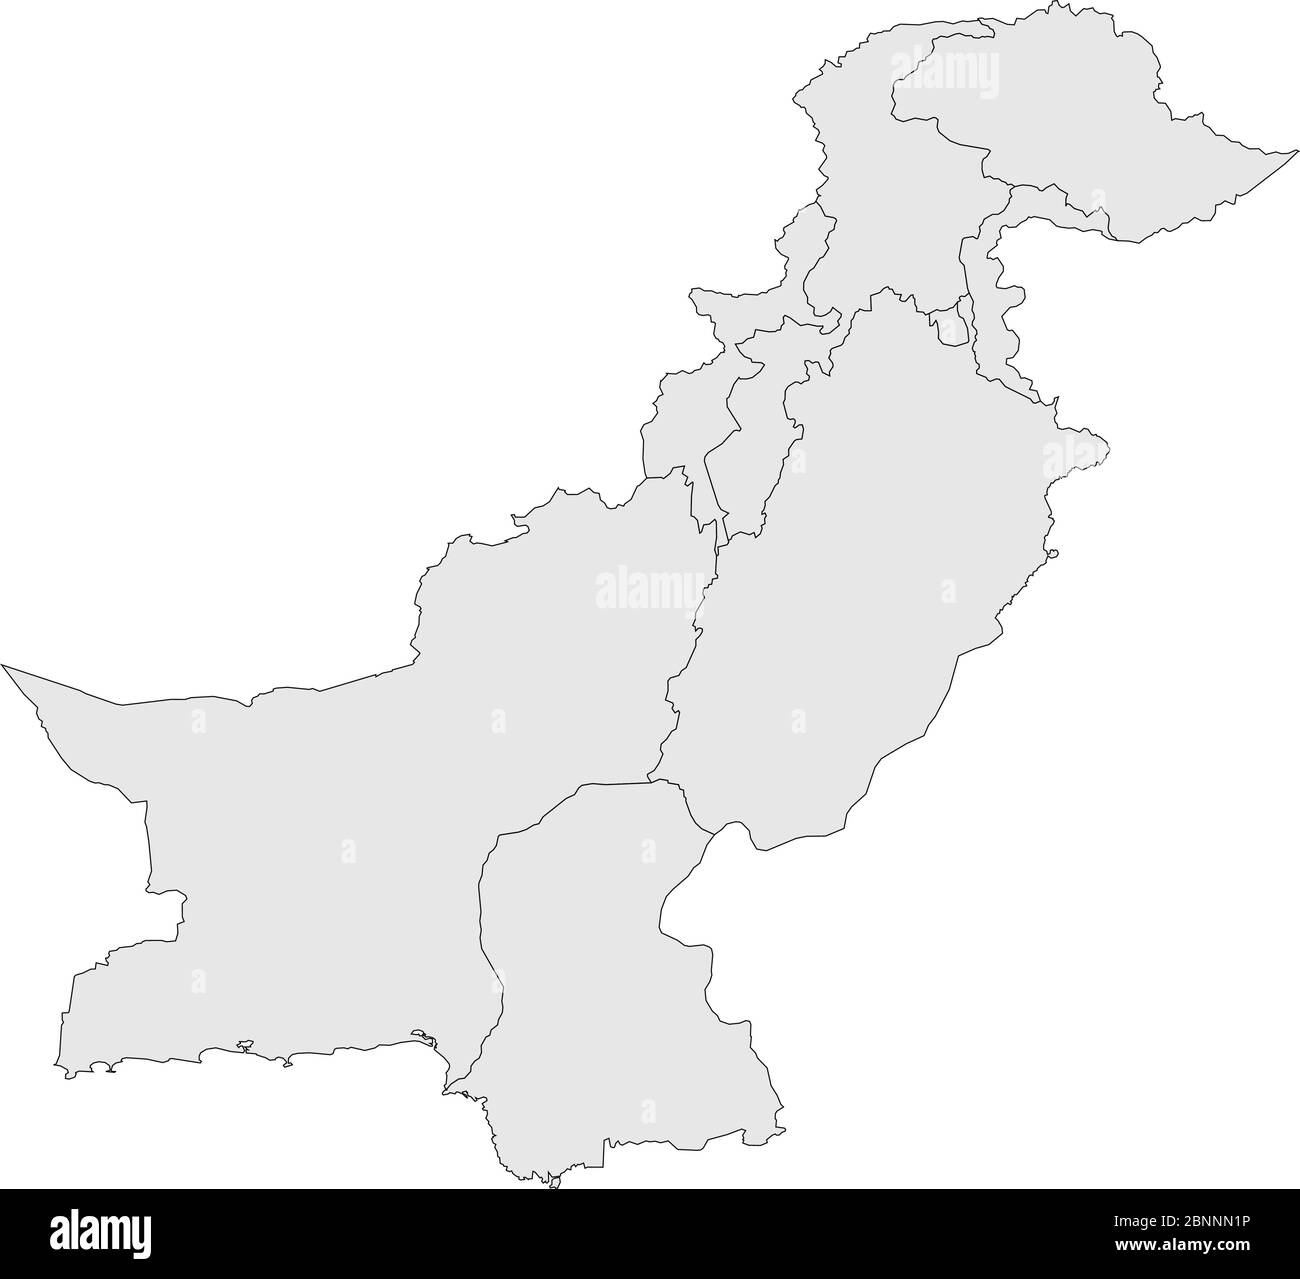 Pakistan vettore mappa politica. Sfondo grigio chiaro. Paese asiatico. Illustrazione Vettoriale